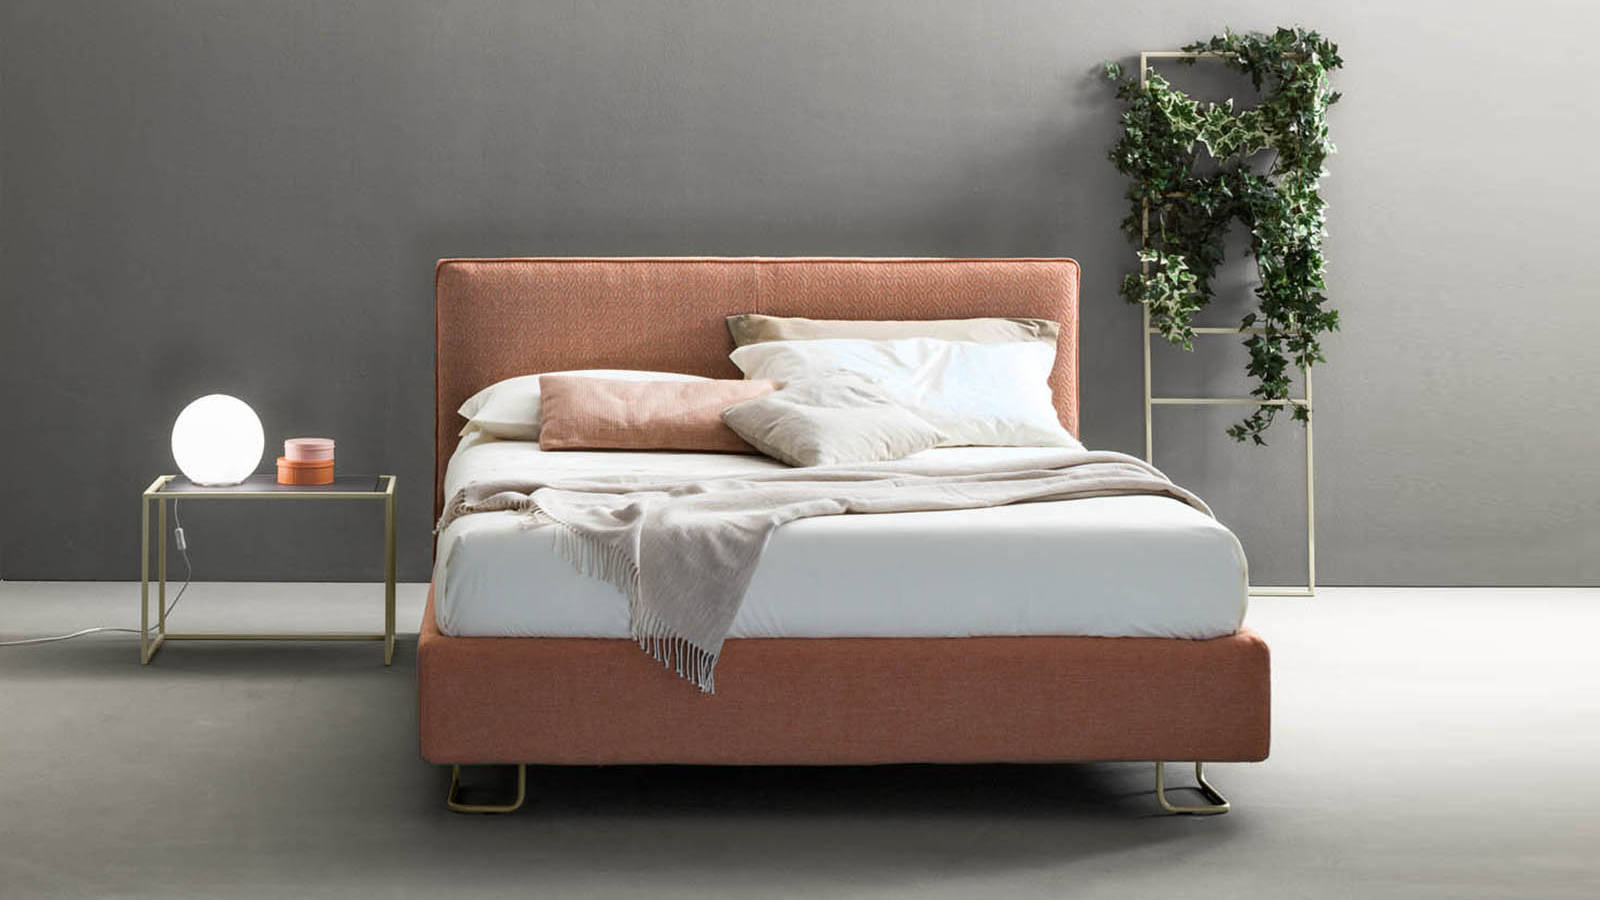 Match Bedroom Space programhoz tartozó ágymodell színes